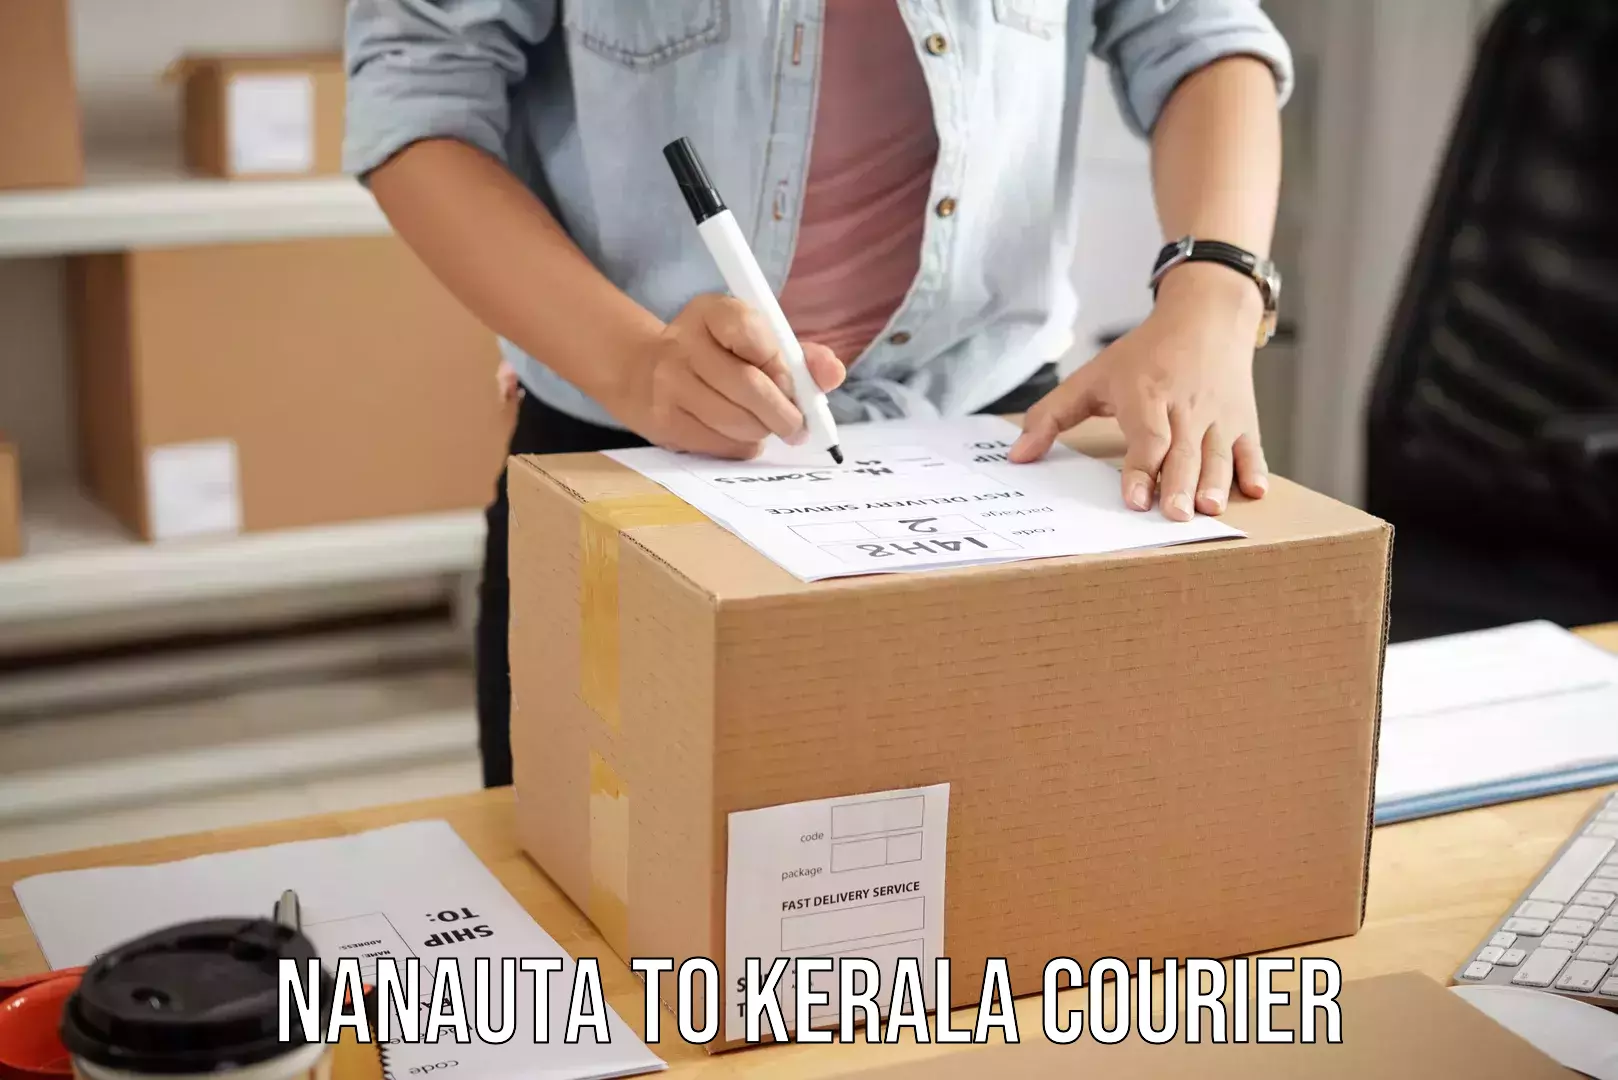 Baggage courier rates calculator Nanauta to Chungathara